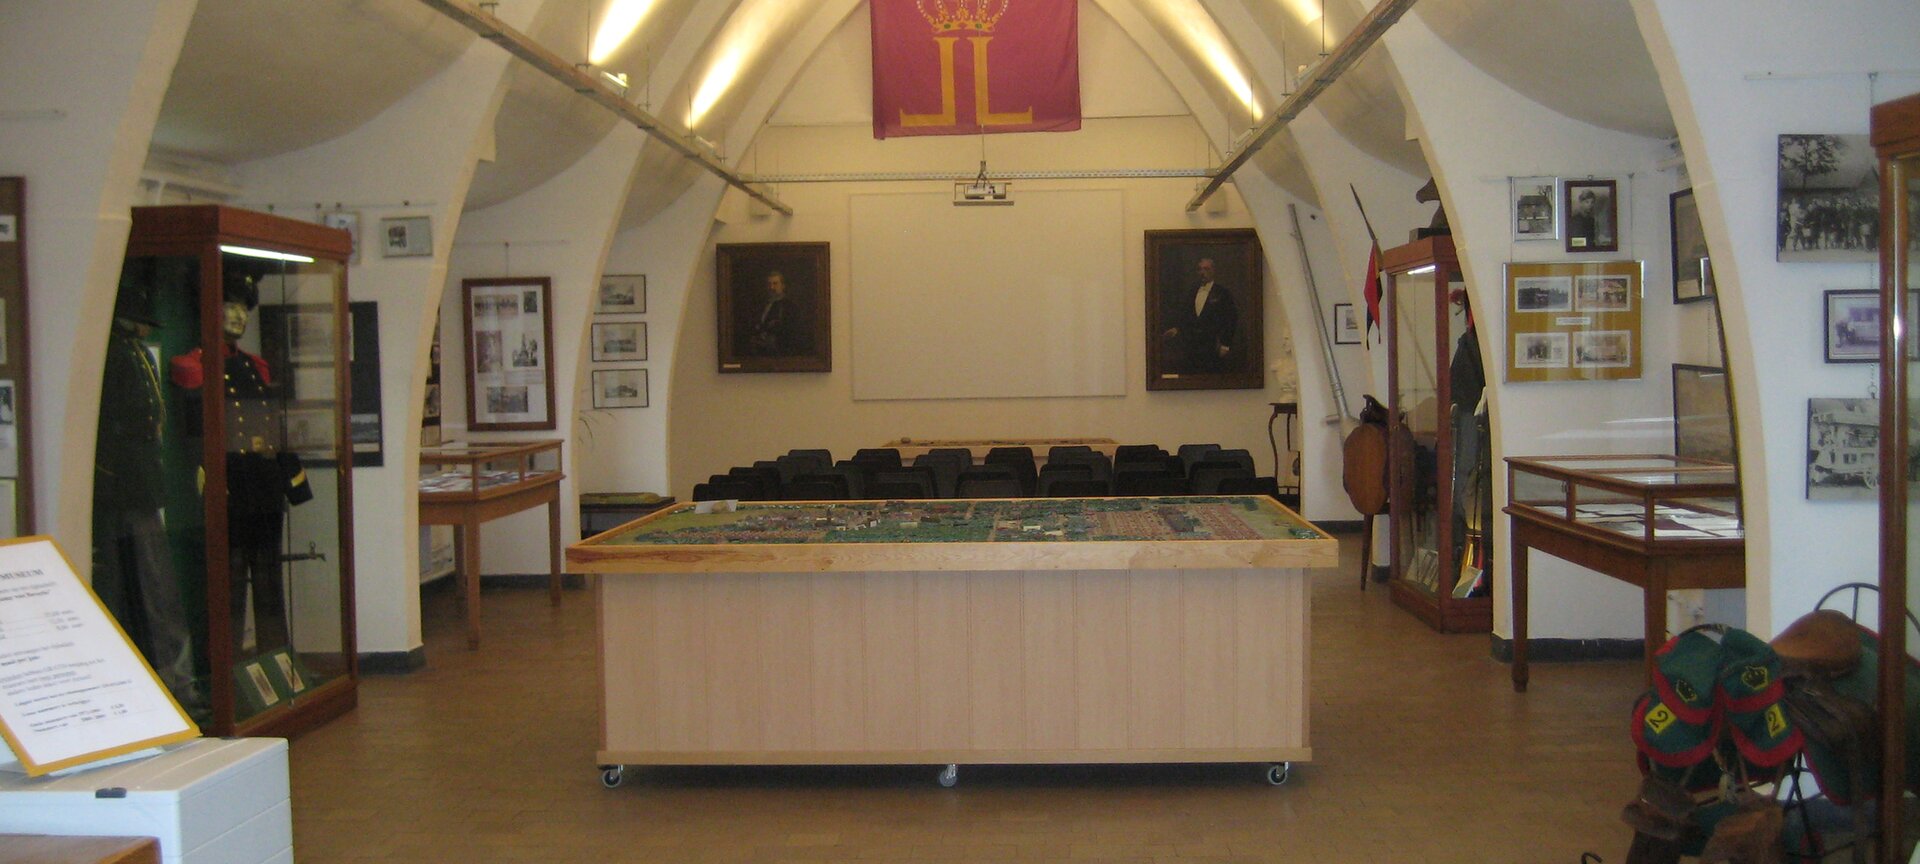 Museum van het Kamp van Beverlo - Museum kamp van Beverlo